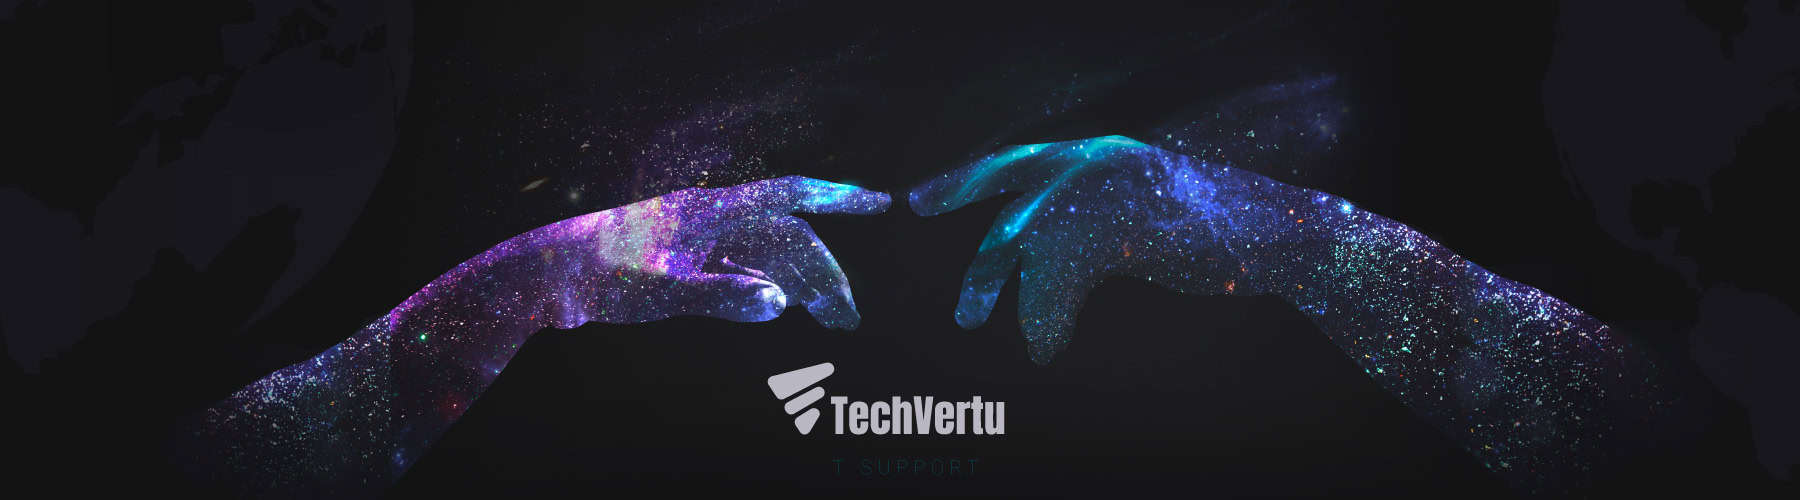 TechVertu IT Support